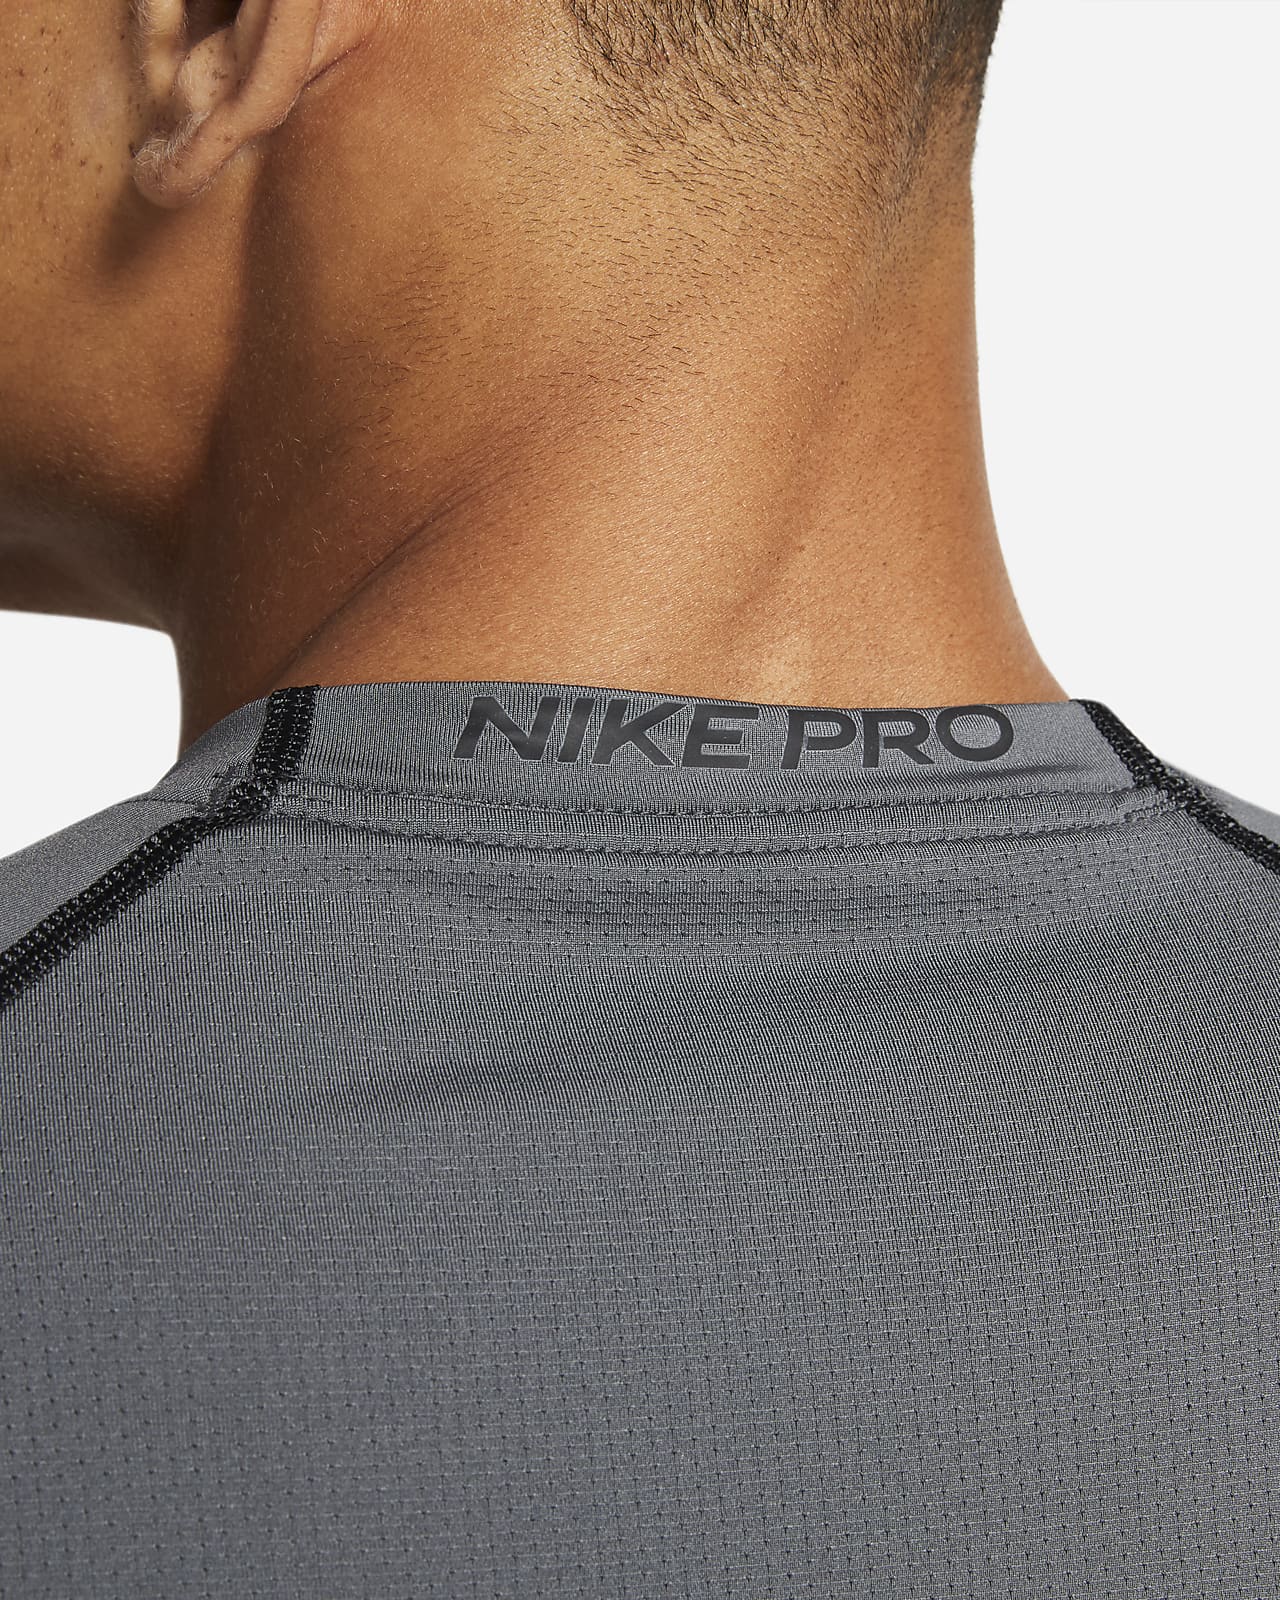 Nike Pro Dri-FIT T-Shirt Homme, Noir/Gris Fonce, XL : : Mode